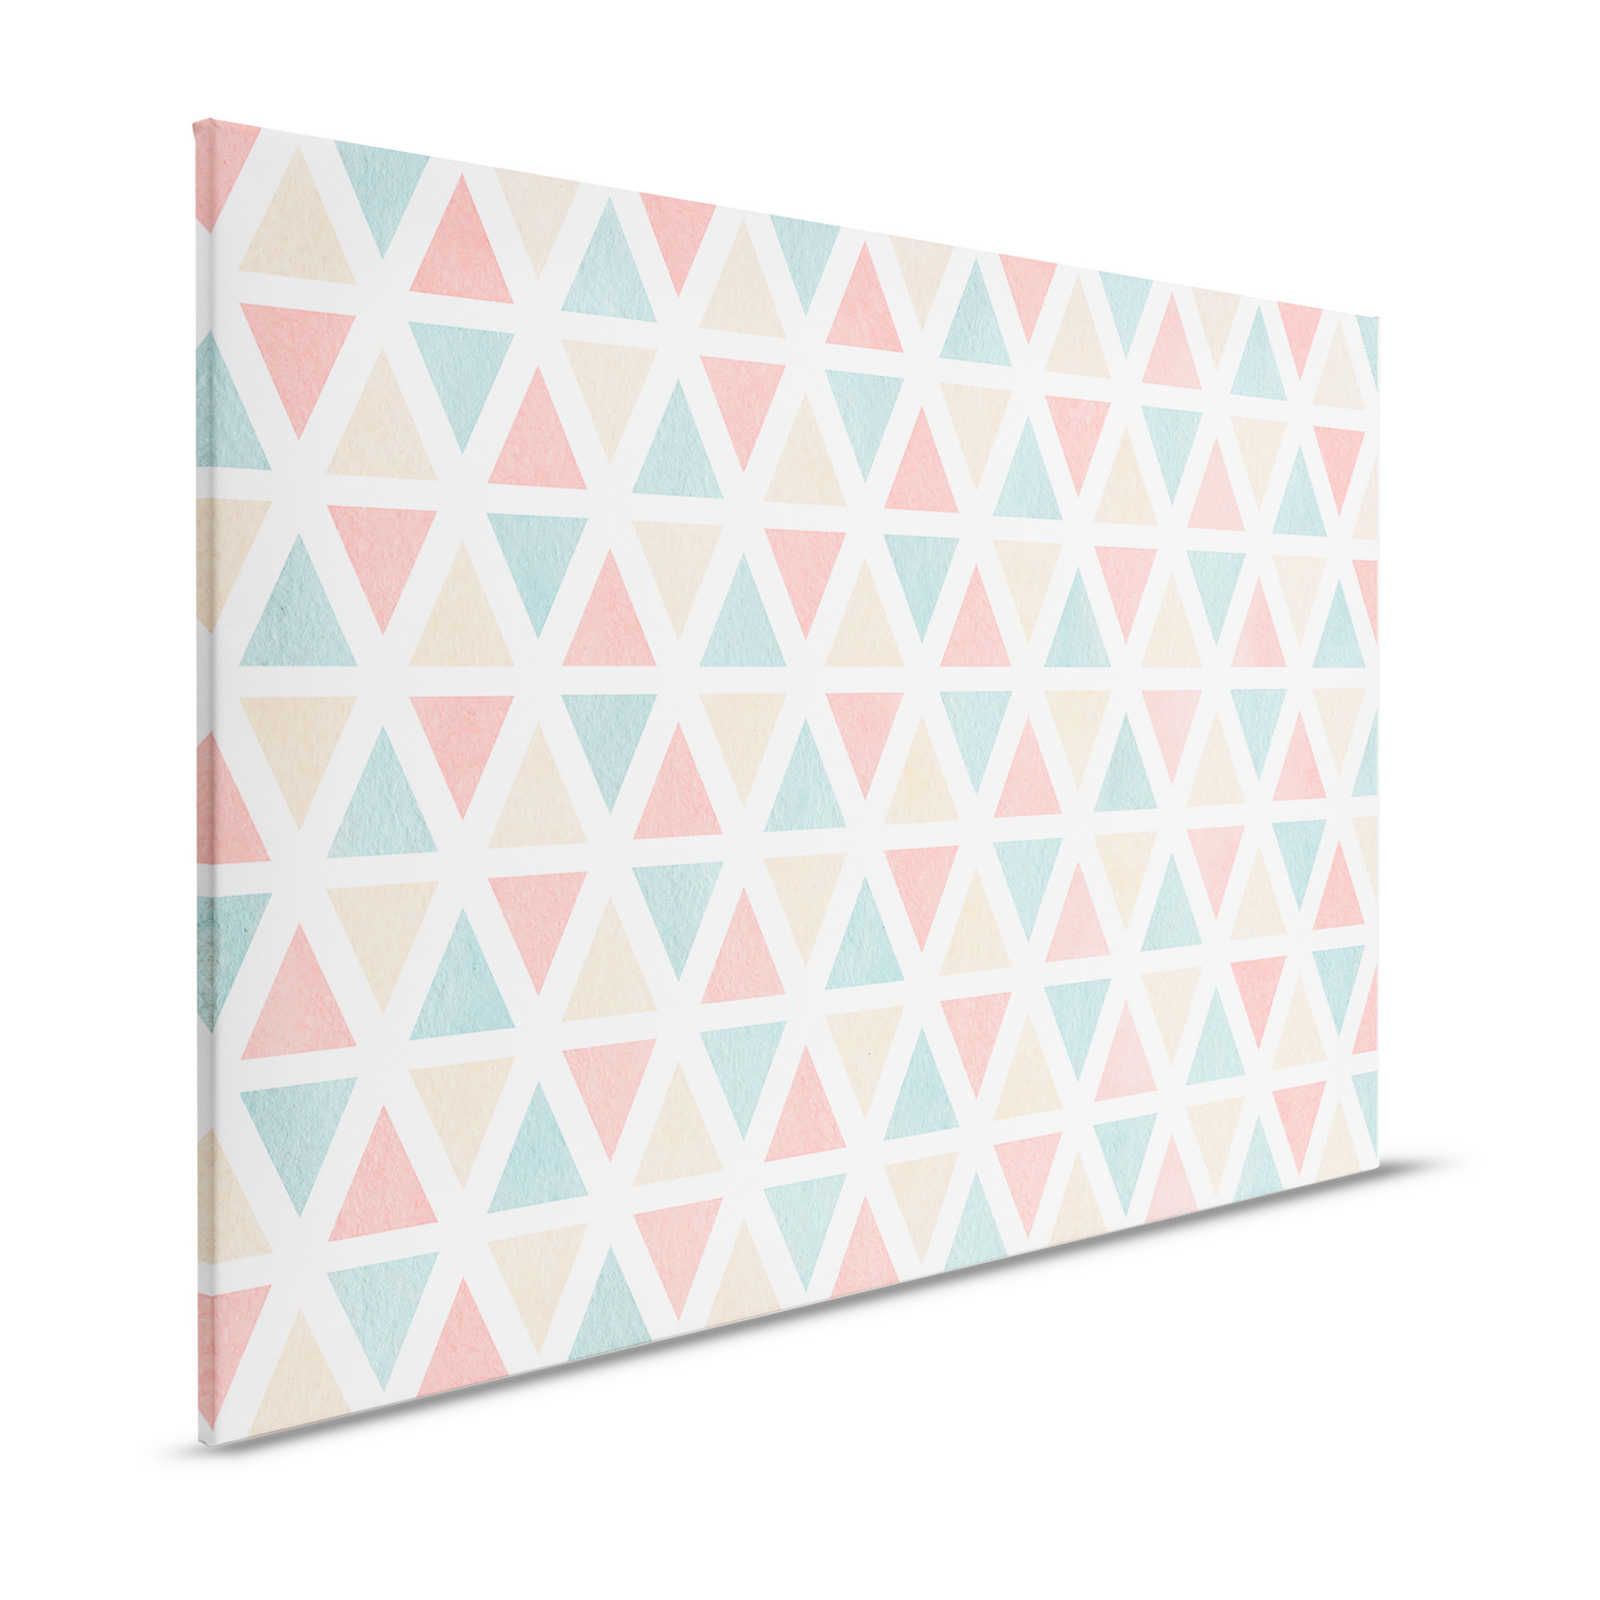 Toile motif graphique avec triangles colorés - 120 cm x 80 cm
